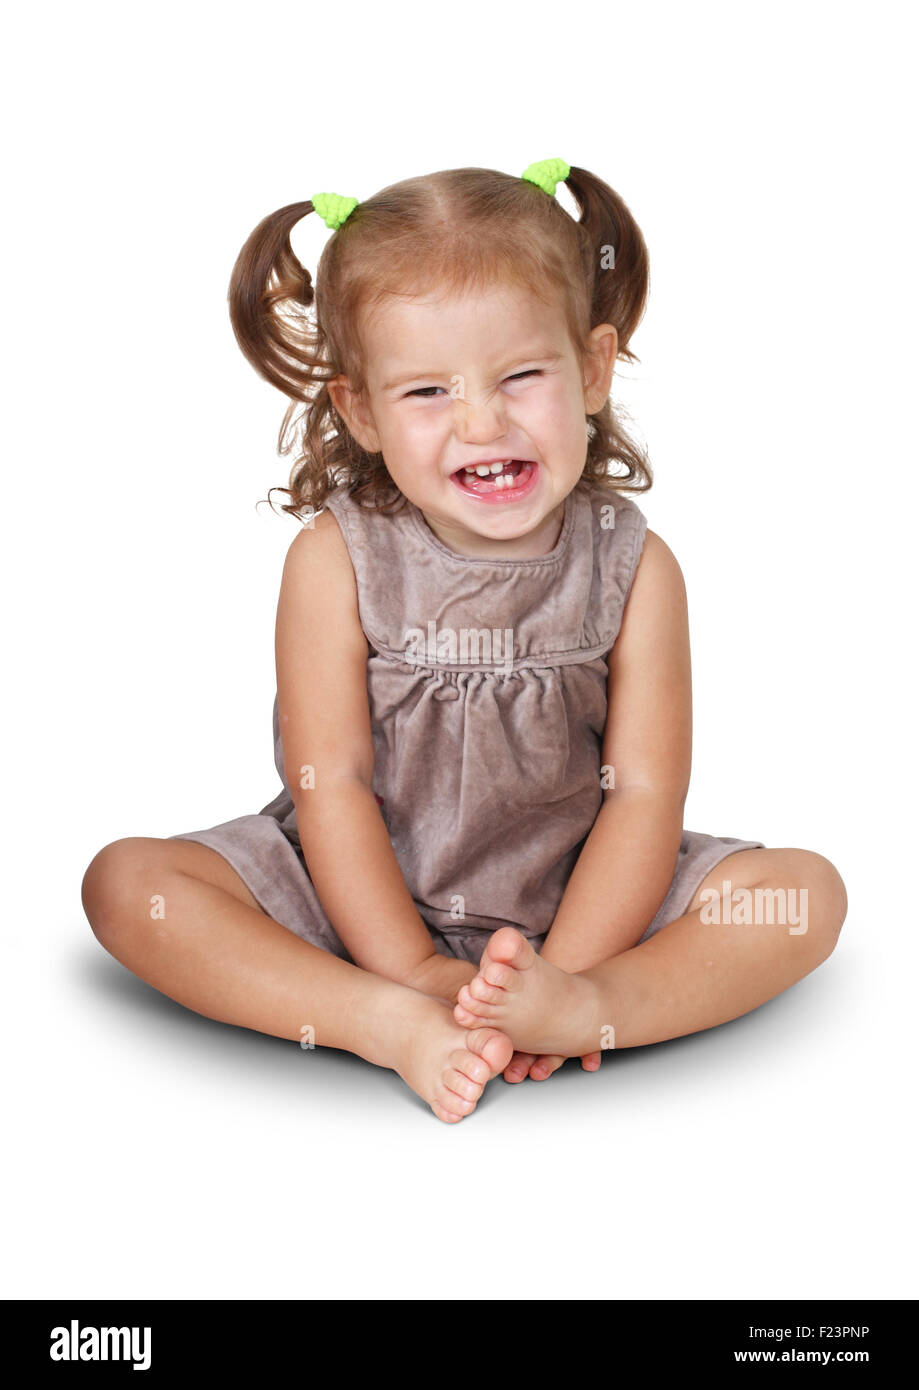 Sentado enojado niño niña con sonrisa aislado en blanco Foto de stock